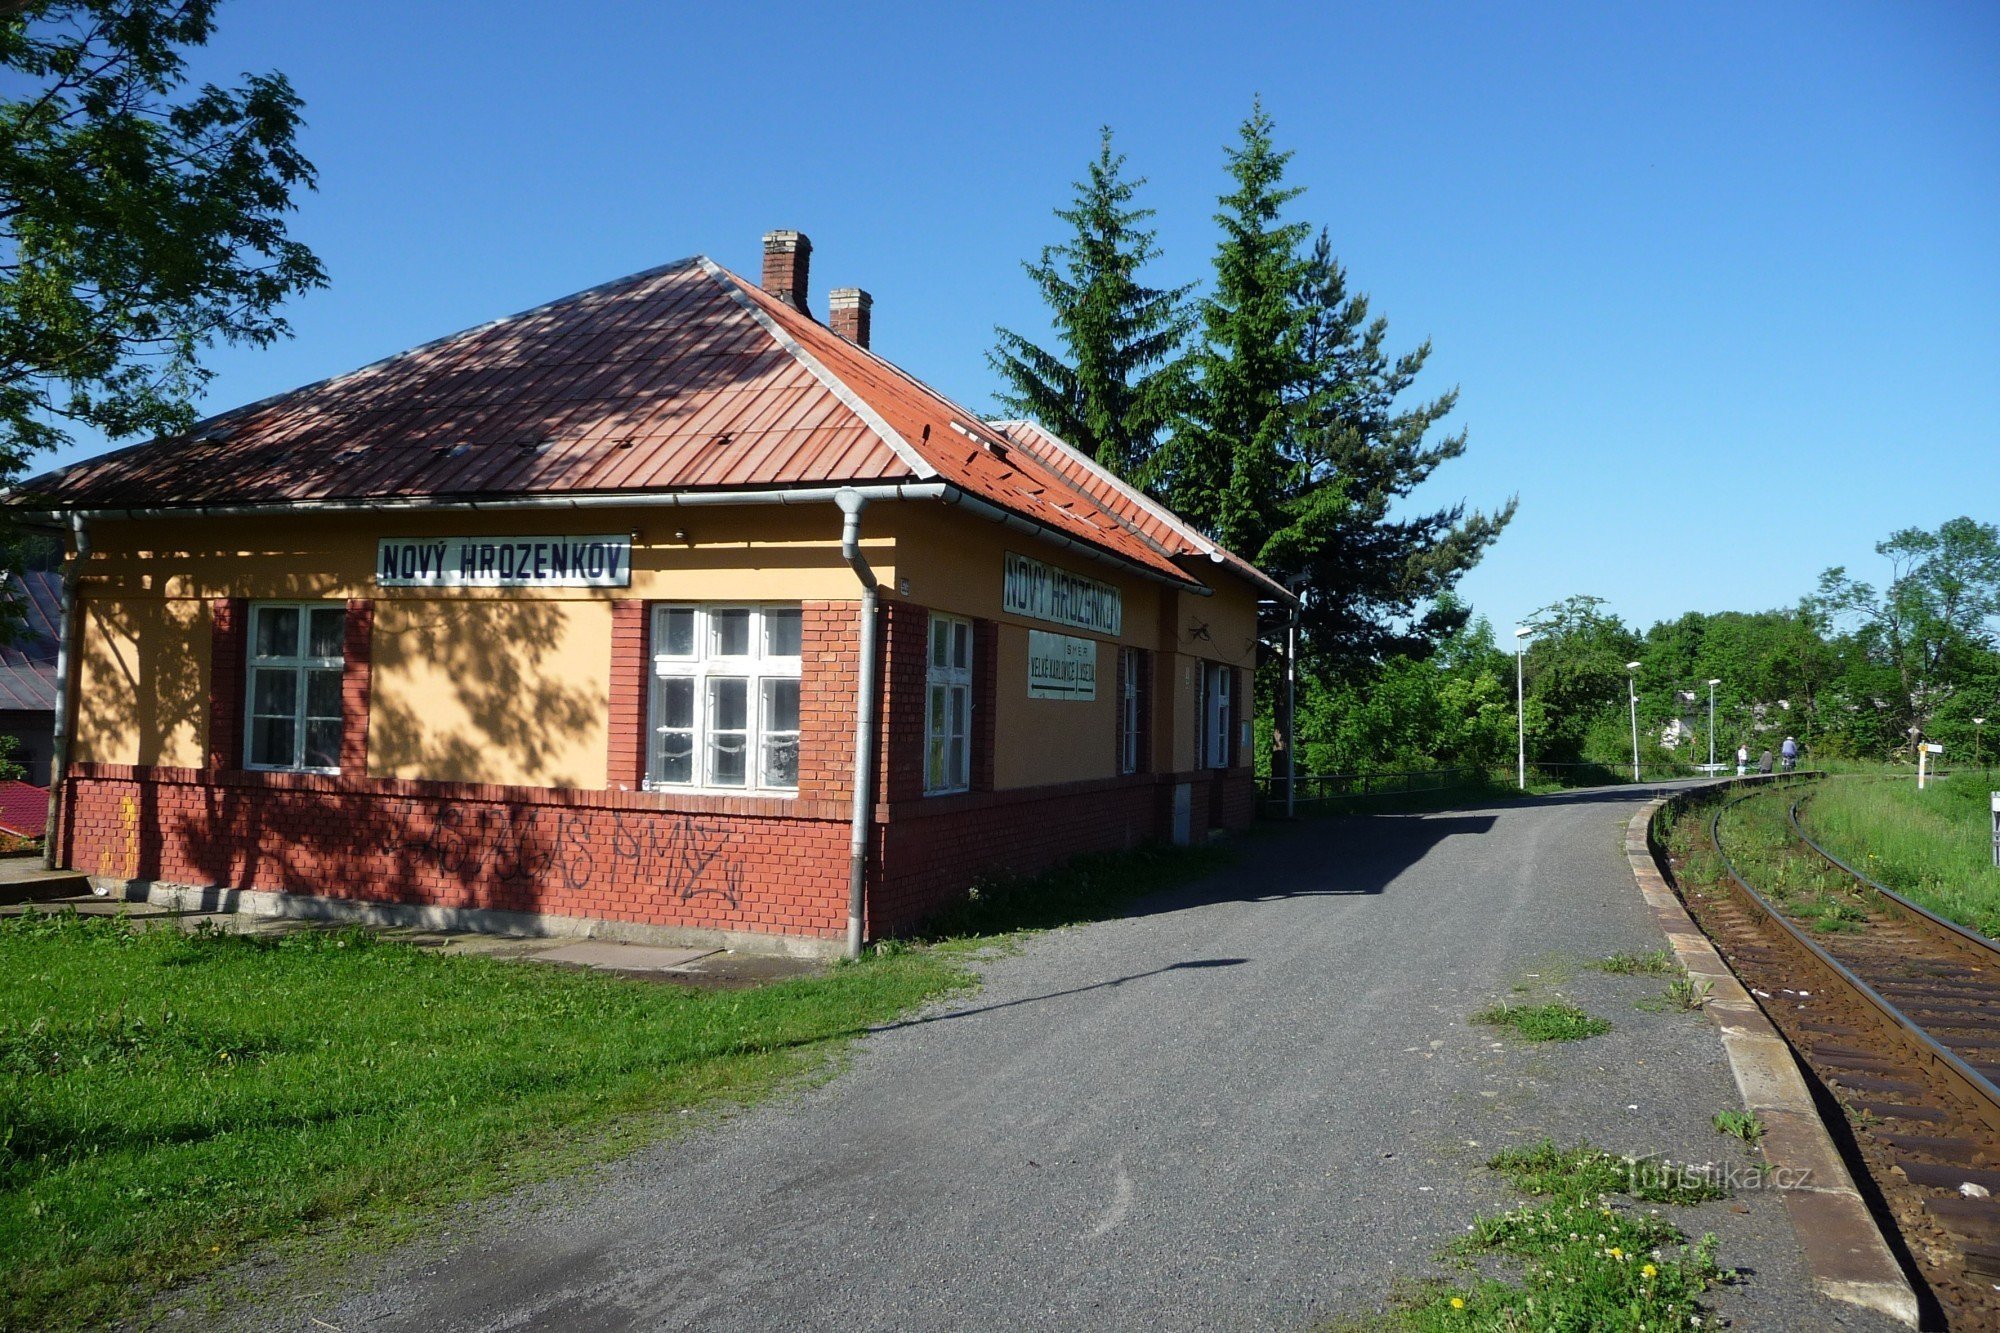 Przystanek autobusowy ČSD - Nový Hrozenkov